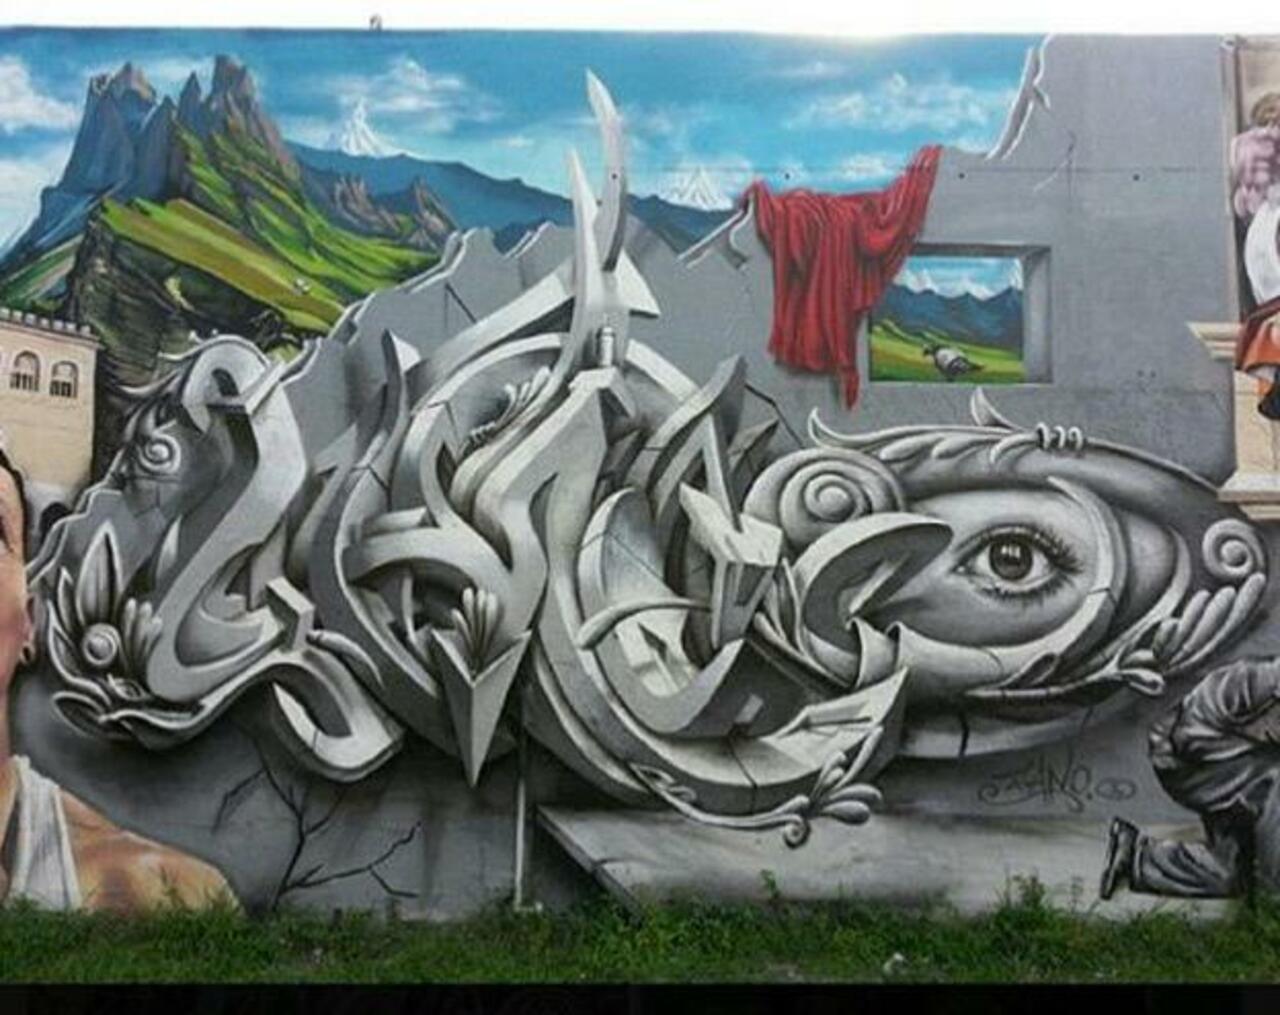 Street Art by Smog One

#art #mural #graffiti #streetart http://t.co/lzyDmRSnKp